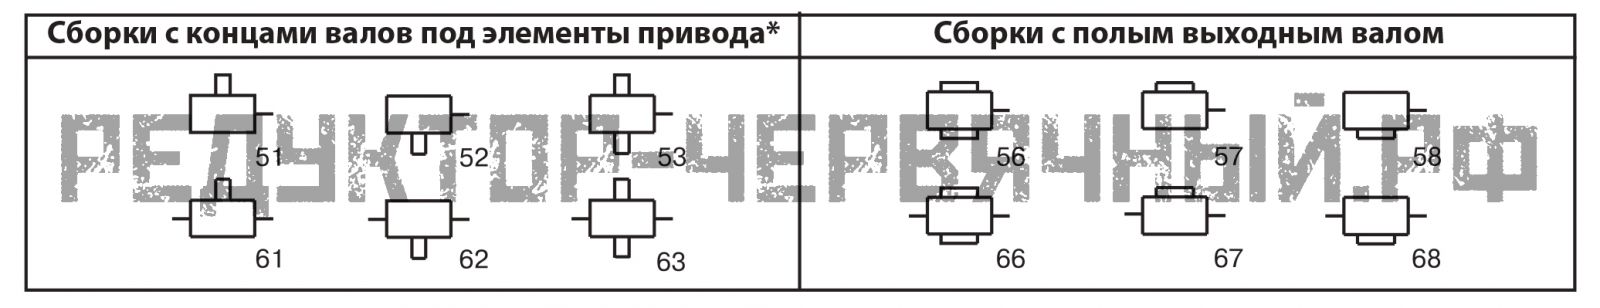 Варианты сборки редукторов 2Ч-63